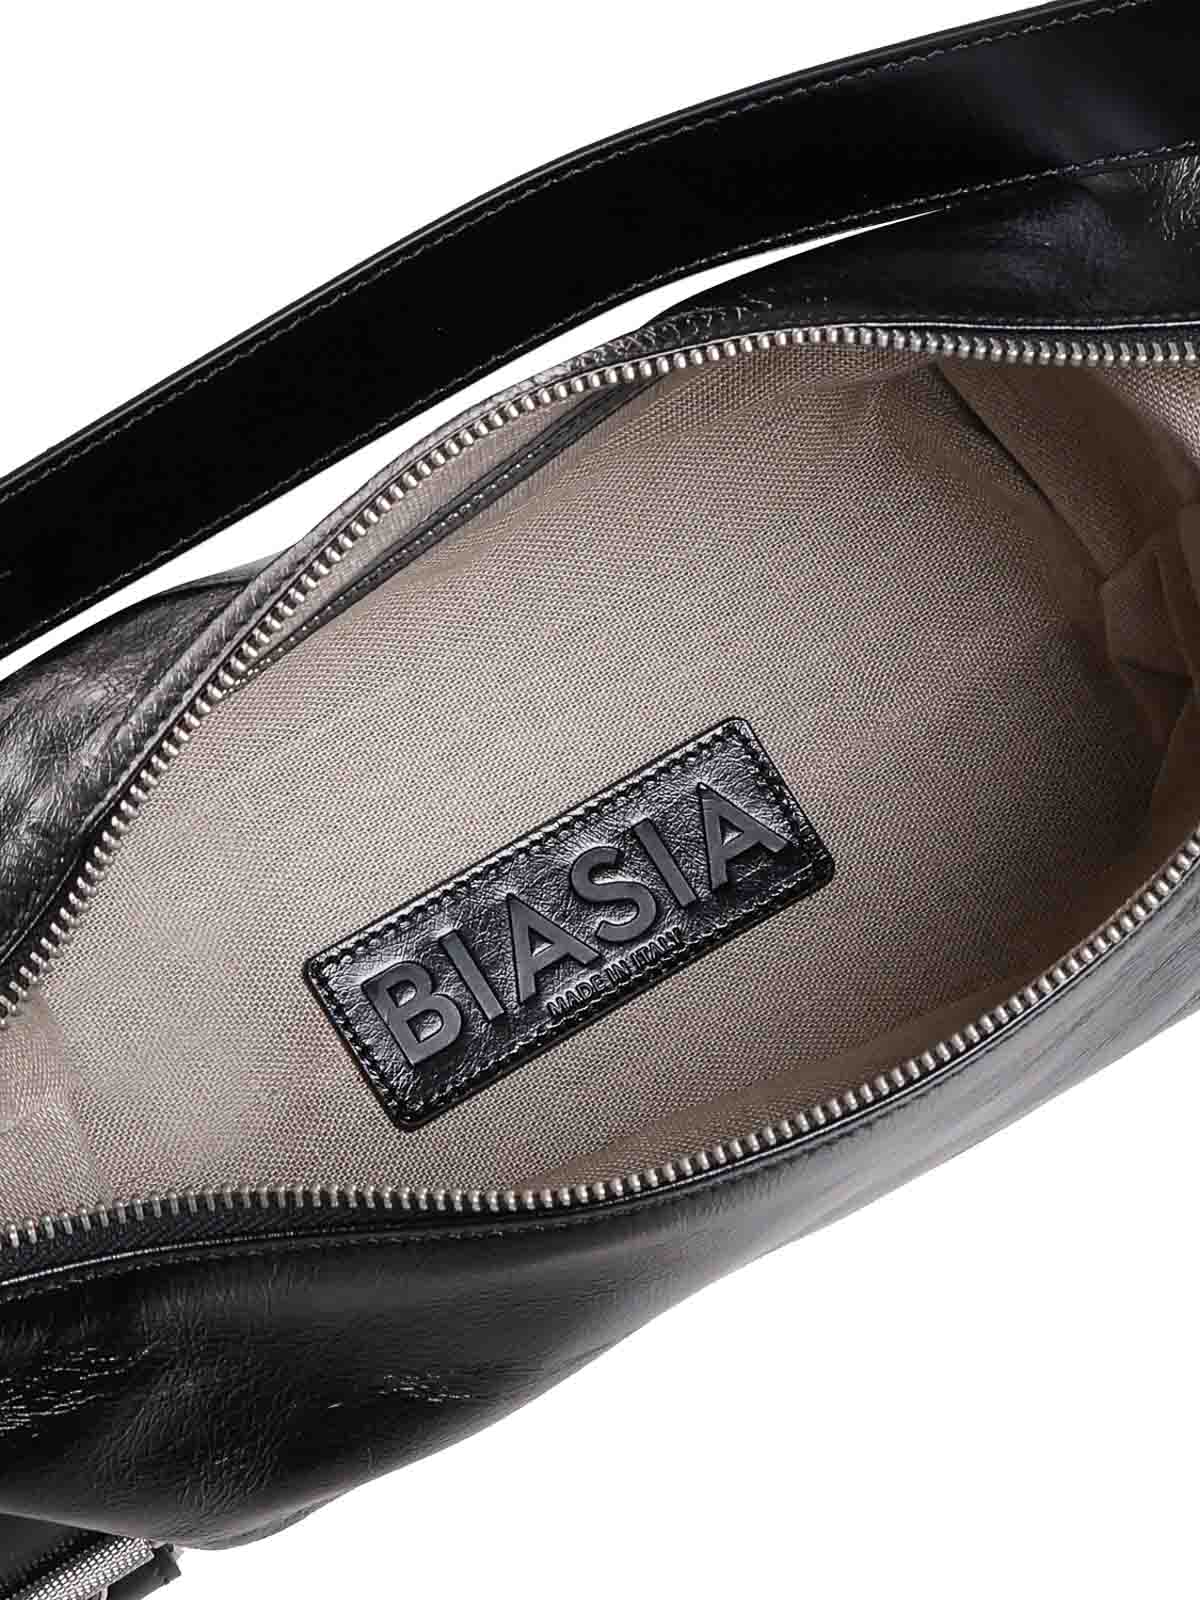 Shop Biasia Shoulder Bag In Black